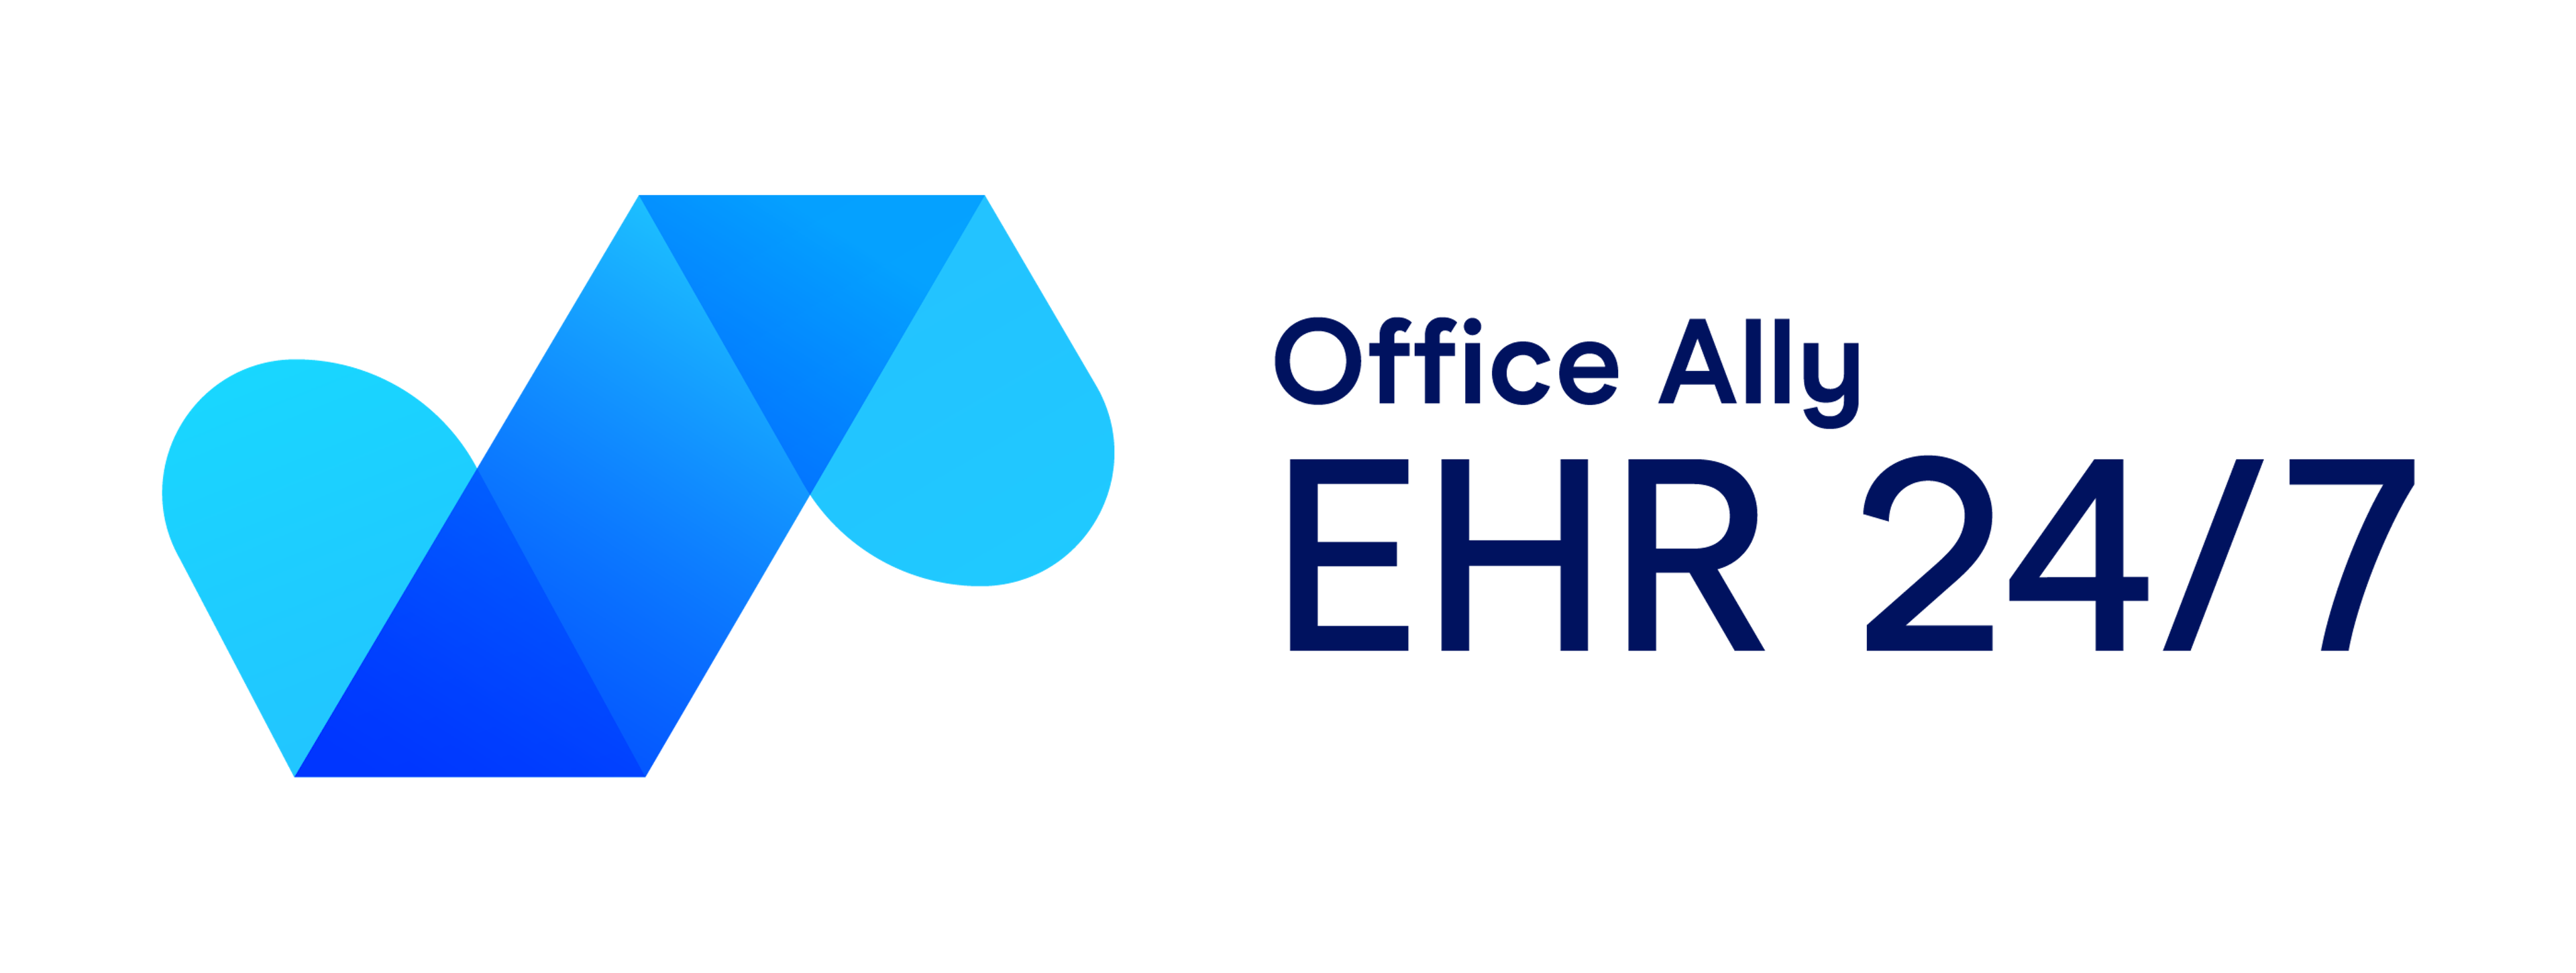 EHR 24/7 Logo